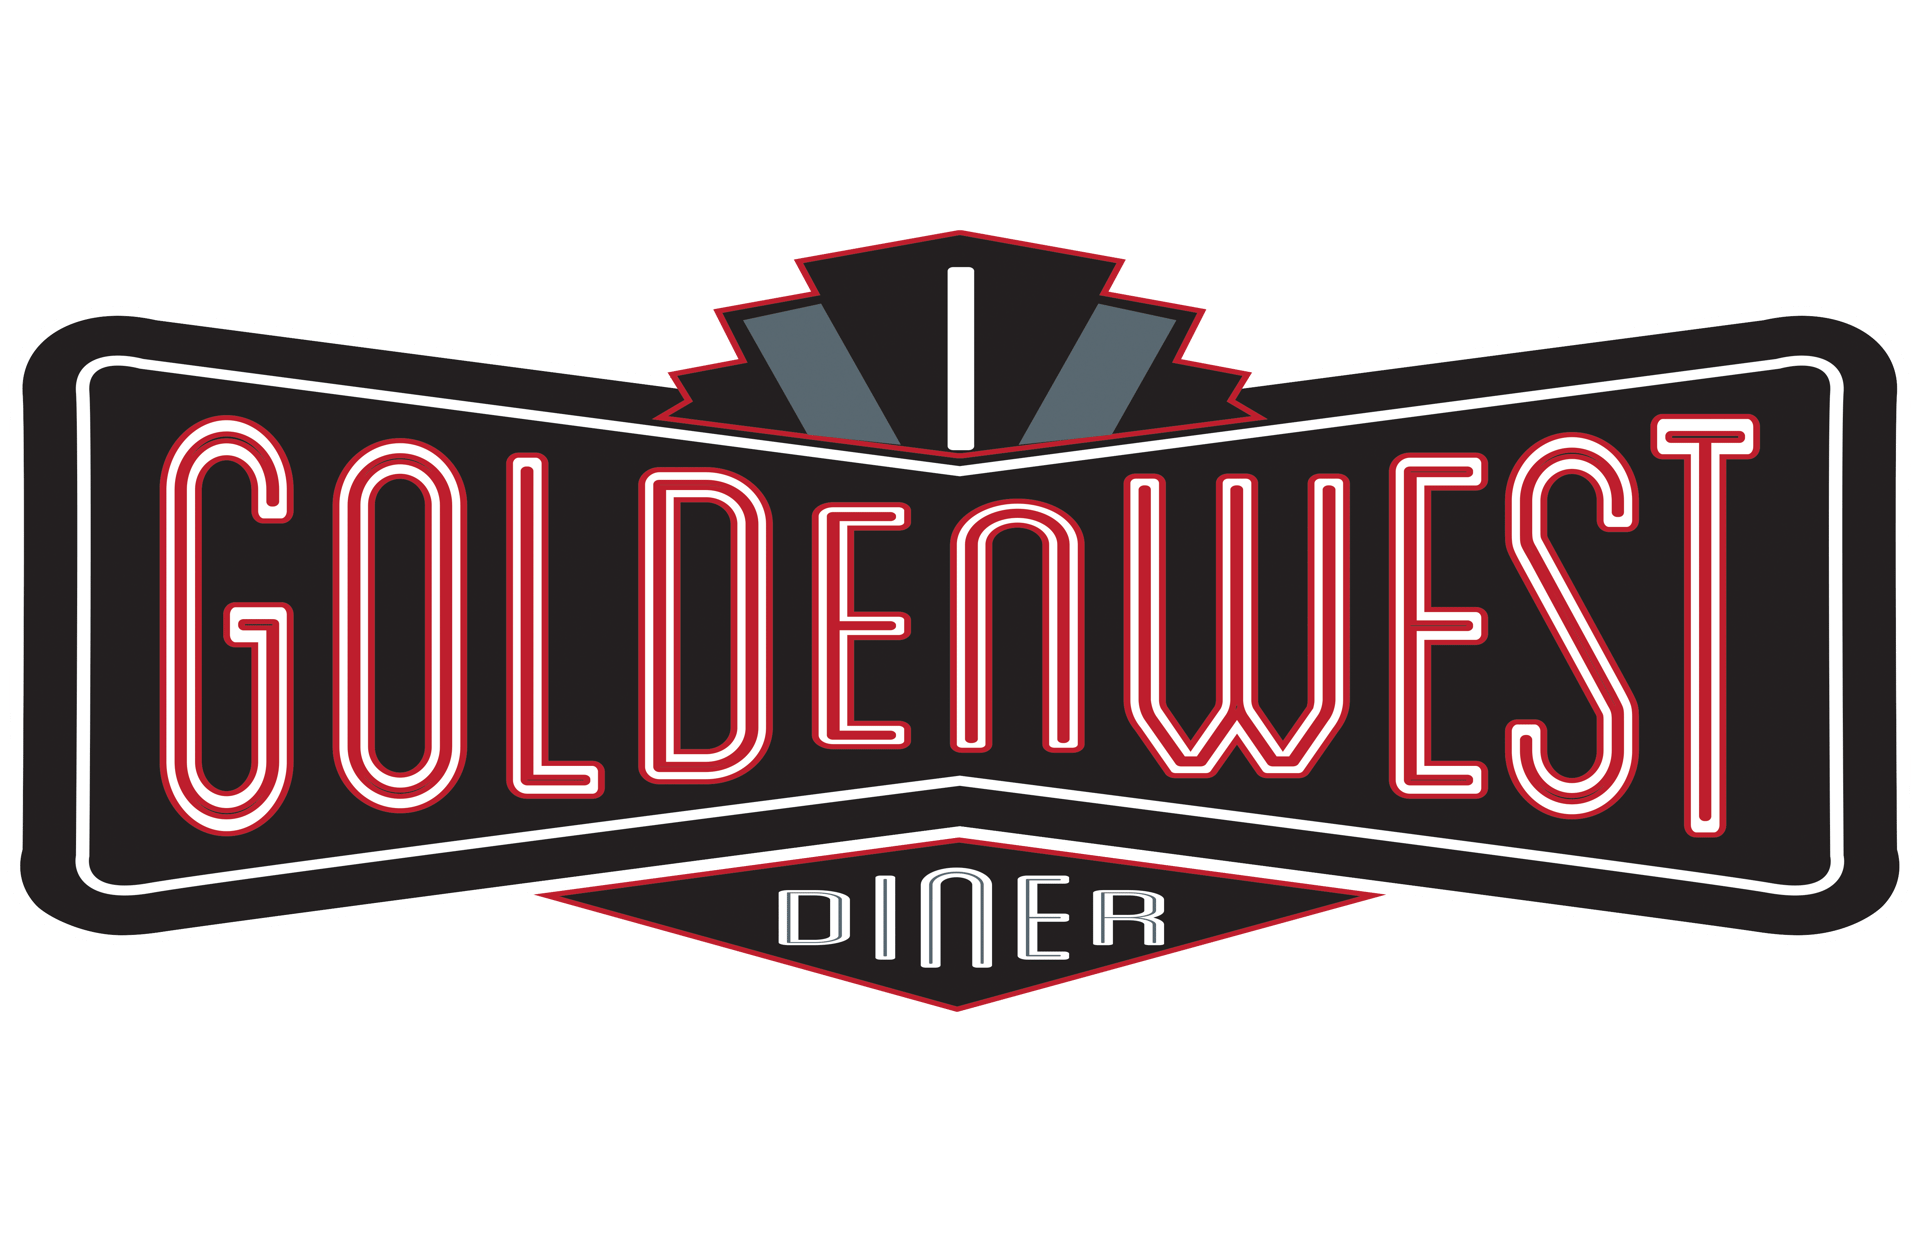 Goldenwest Diner logo